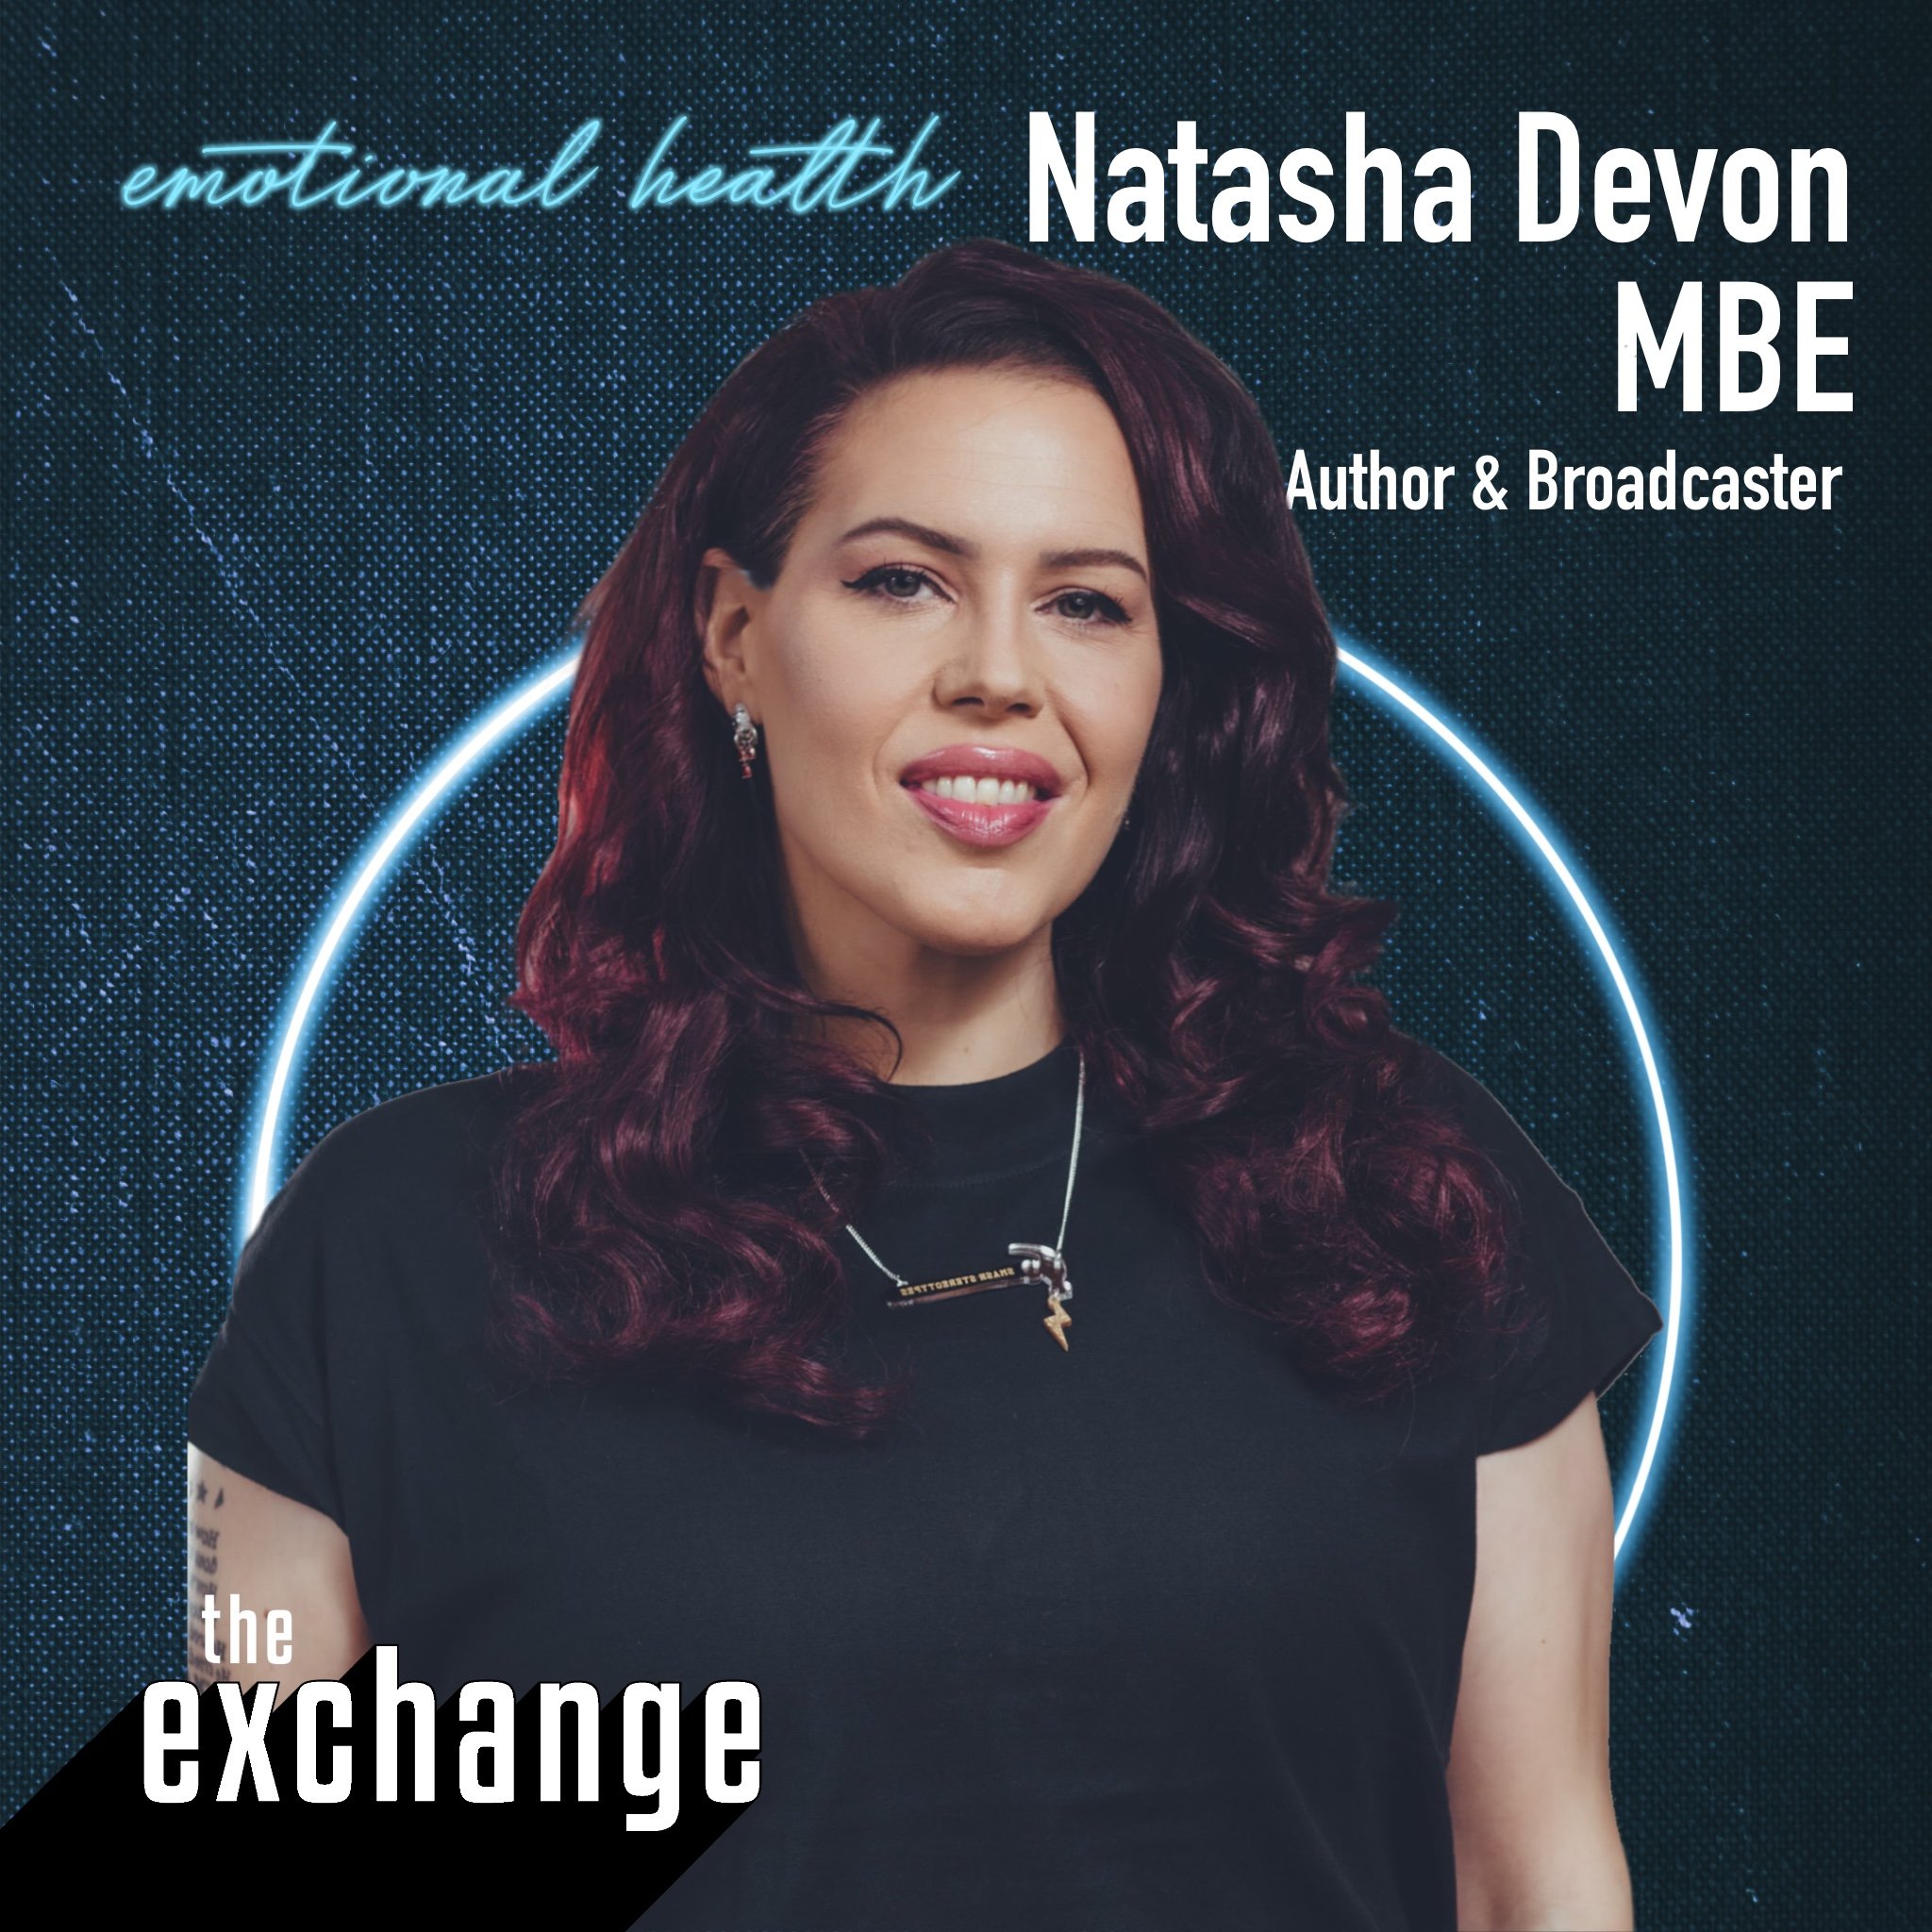 Natasha Devon on understanding emotion